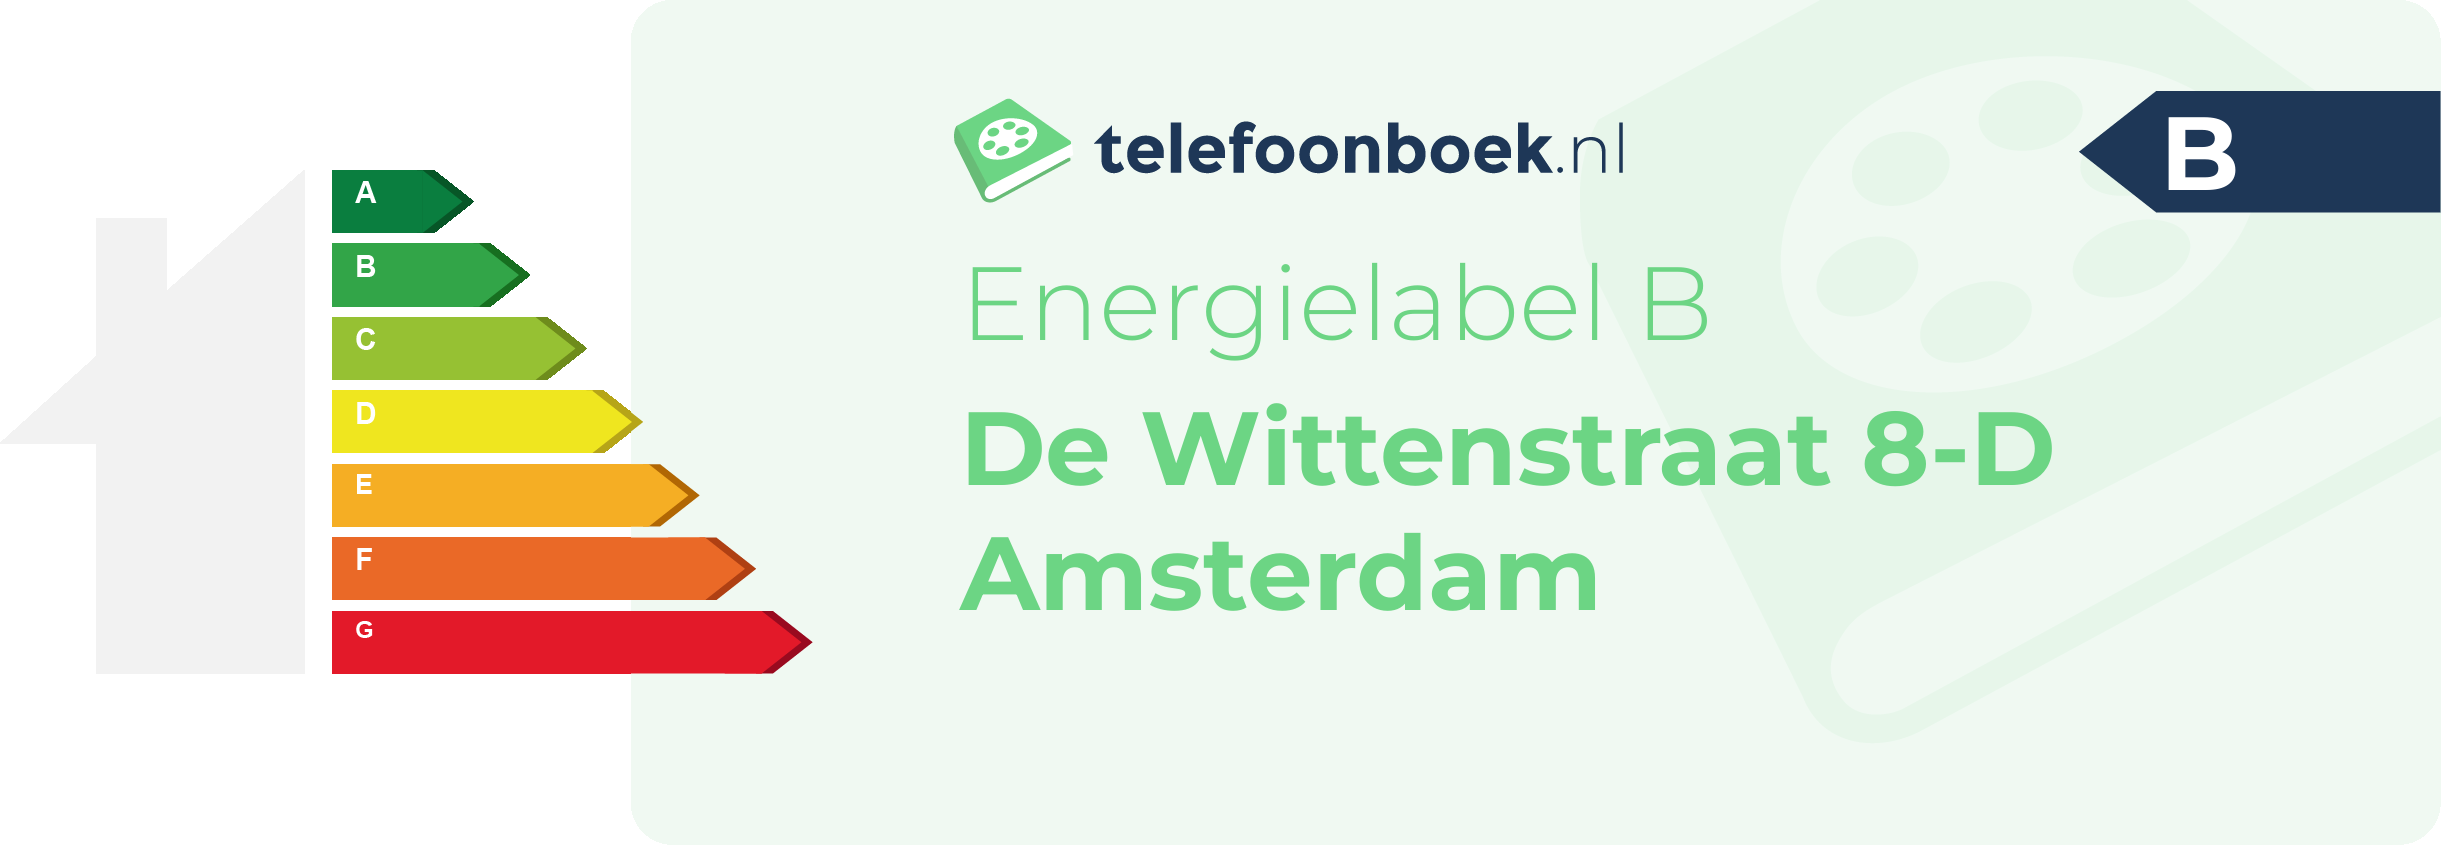 Energielabel De Wittenstraat 8-D Amsterdam